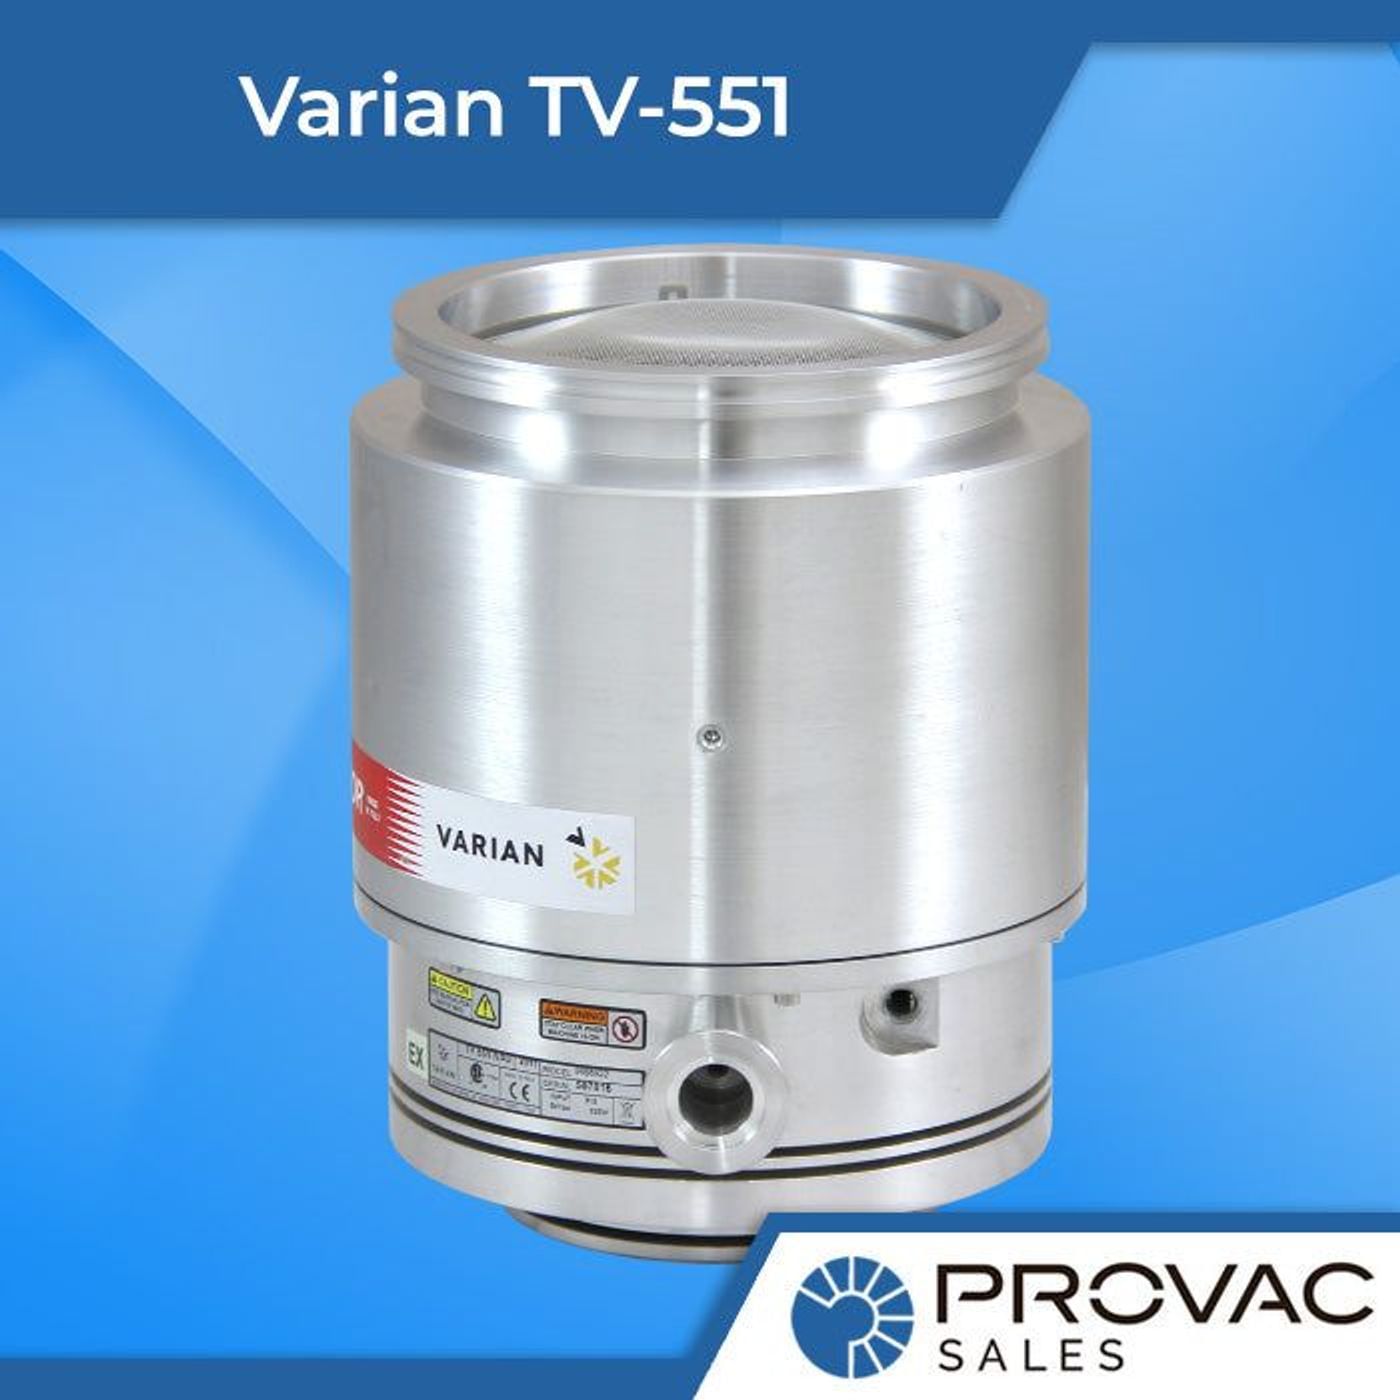 Product Spotlight: Varian TV-551 Turbo Pump